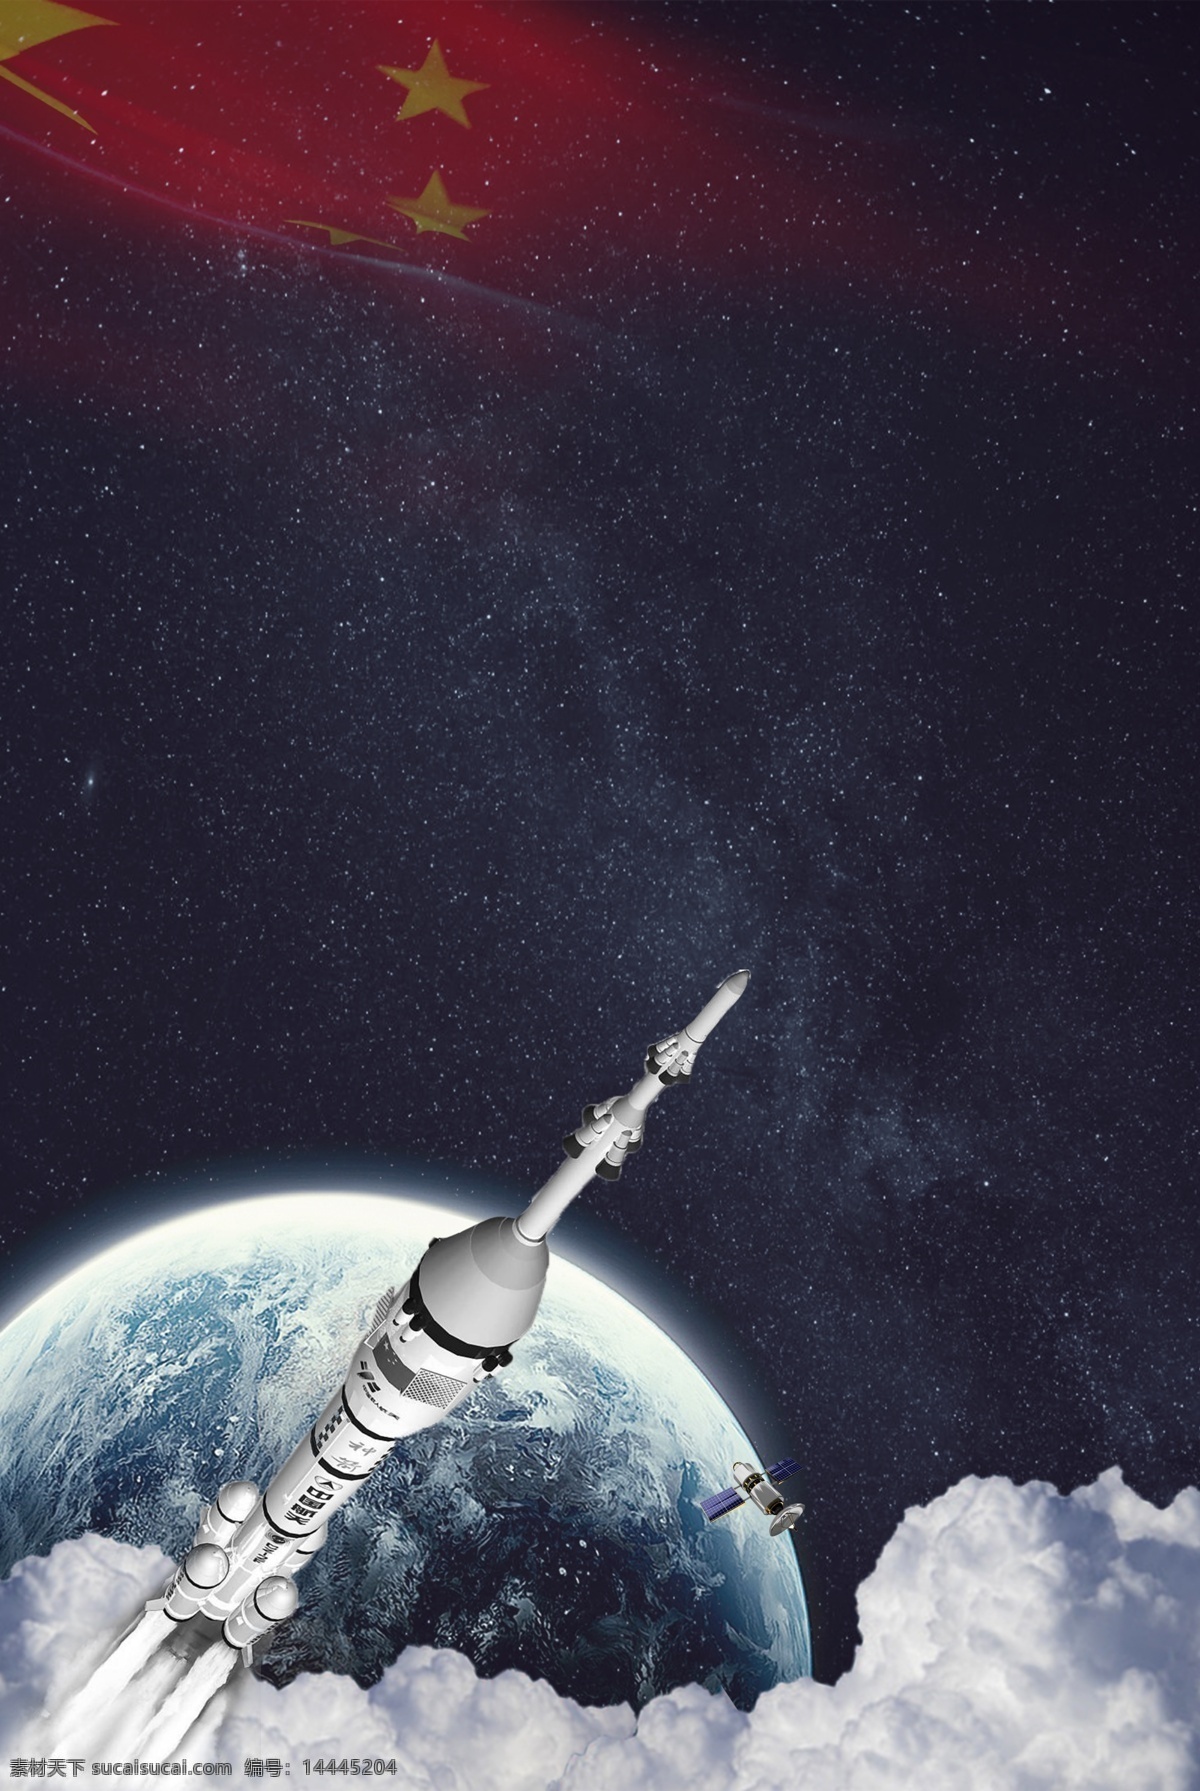 嫦娥 四 号 发射 成功 大气 地球 海报 嫦娥四号 航天 中国航天 航天科技 五星红旗 烟雾 运载火箭 星空